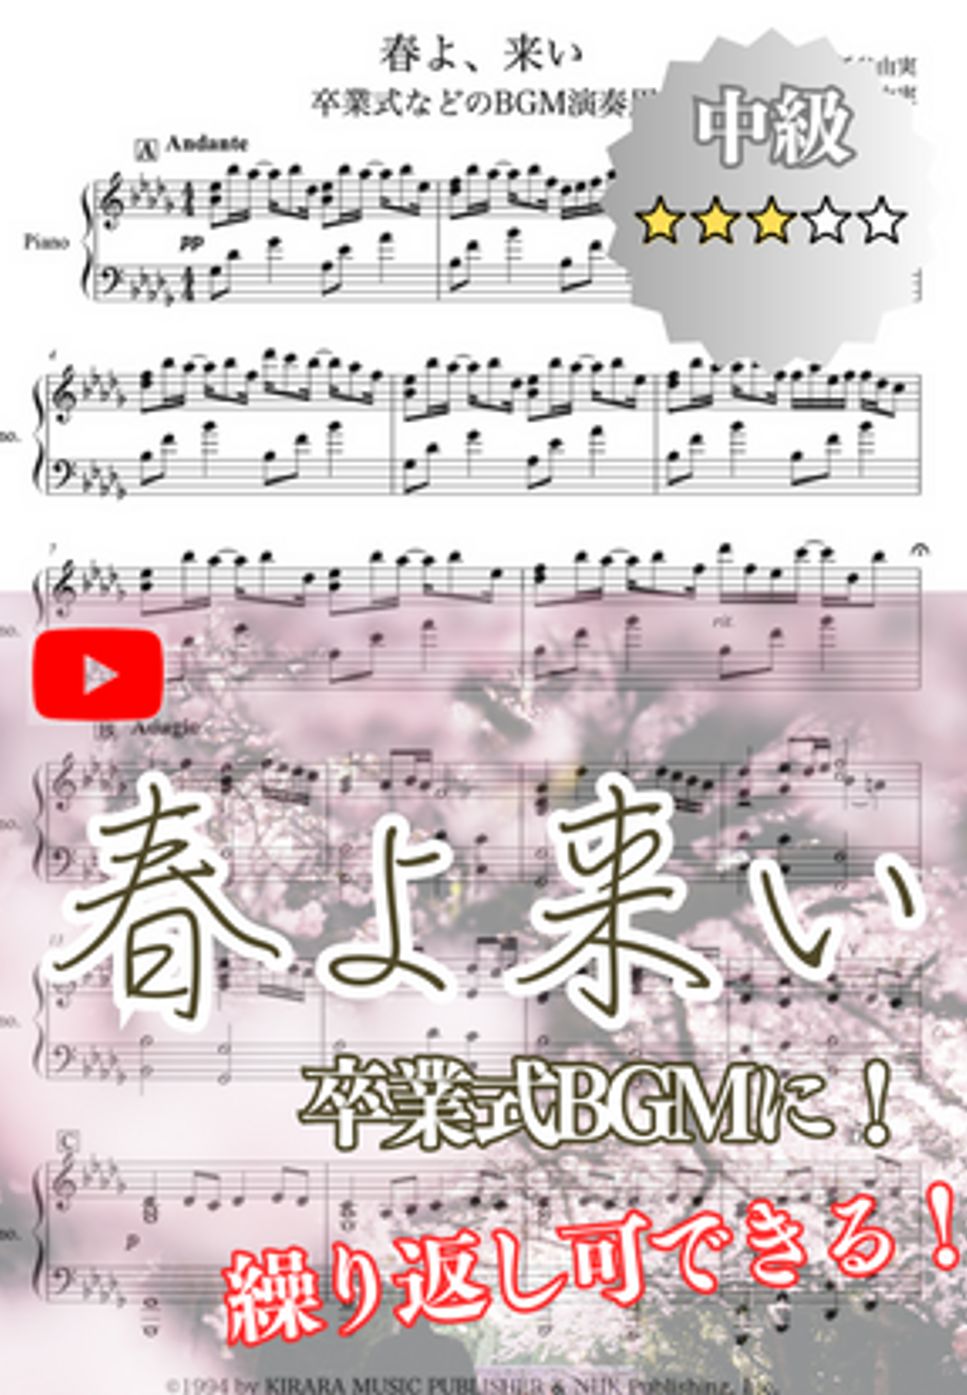 松任谷 由実 - 春よ、来い (卒業式BGM演奏用) by コギト